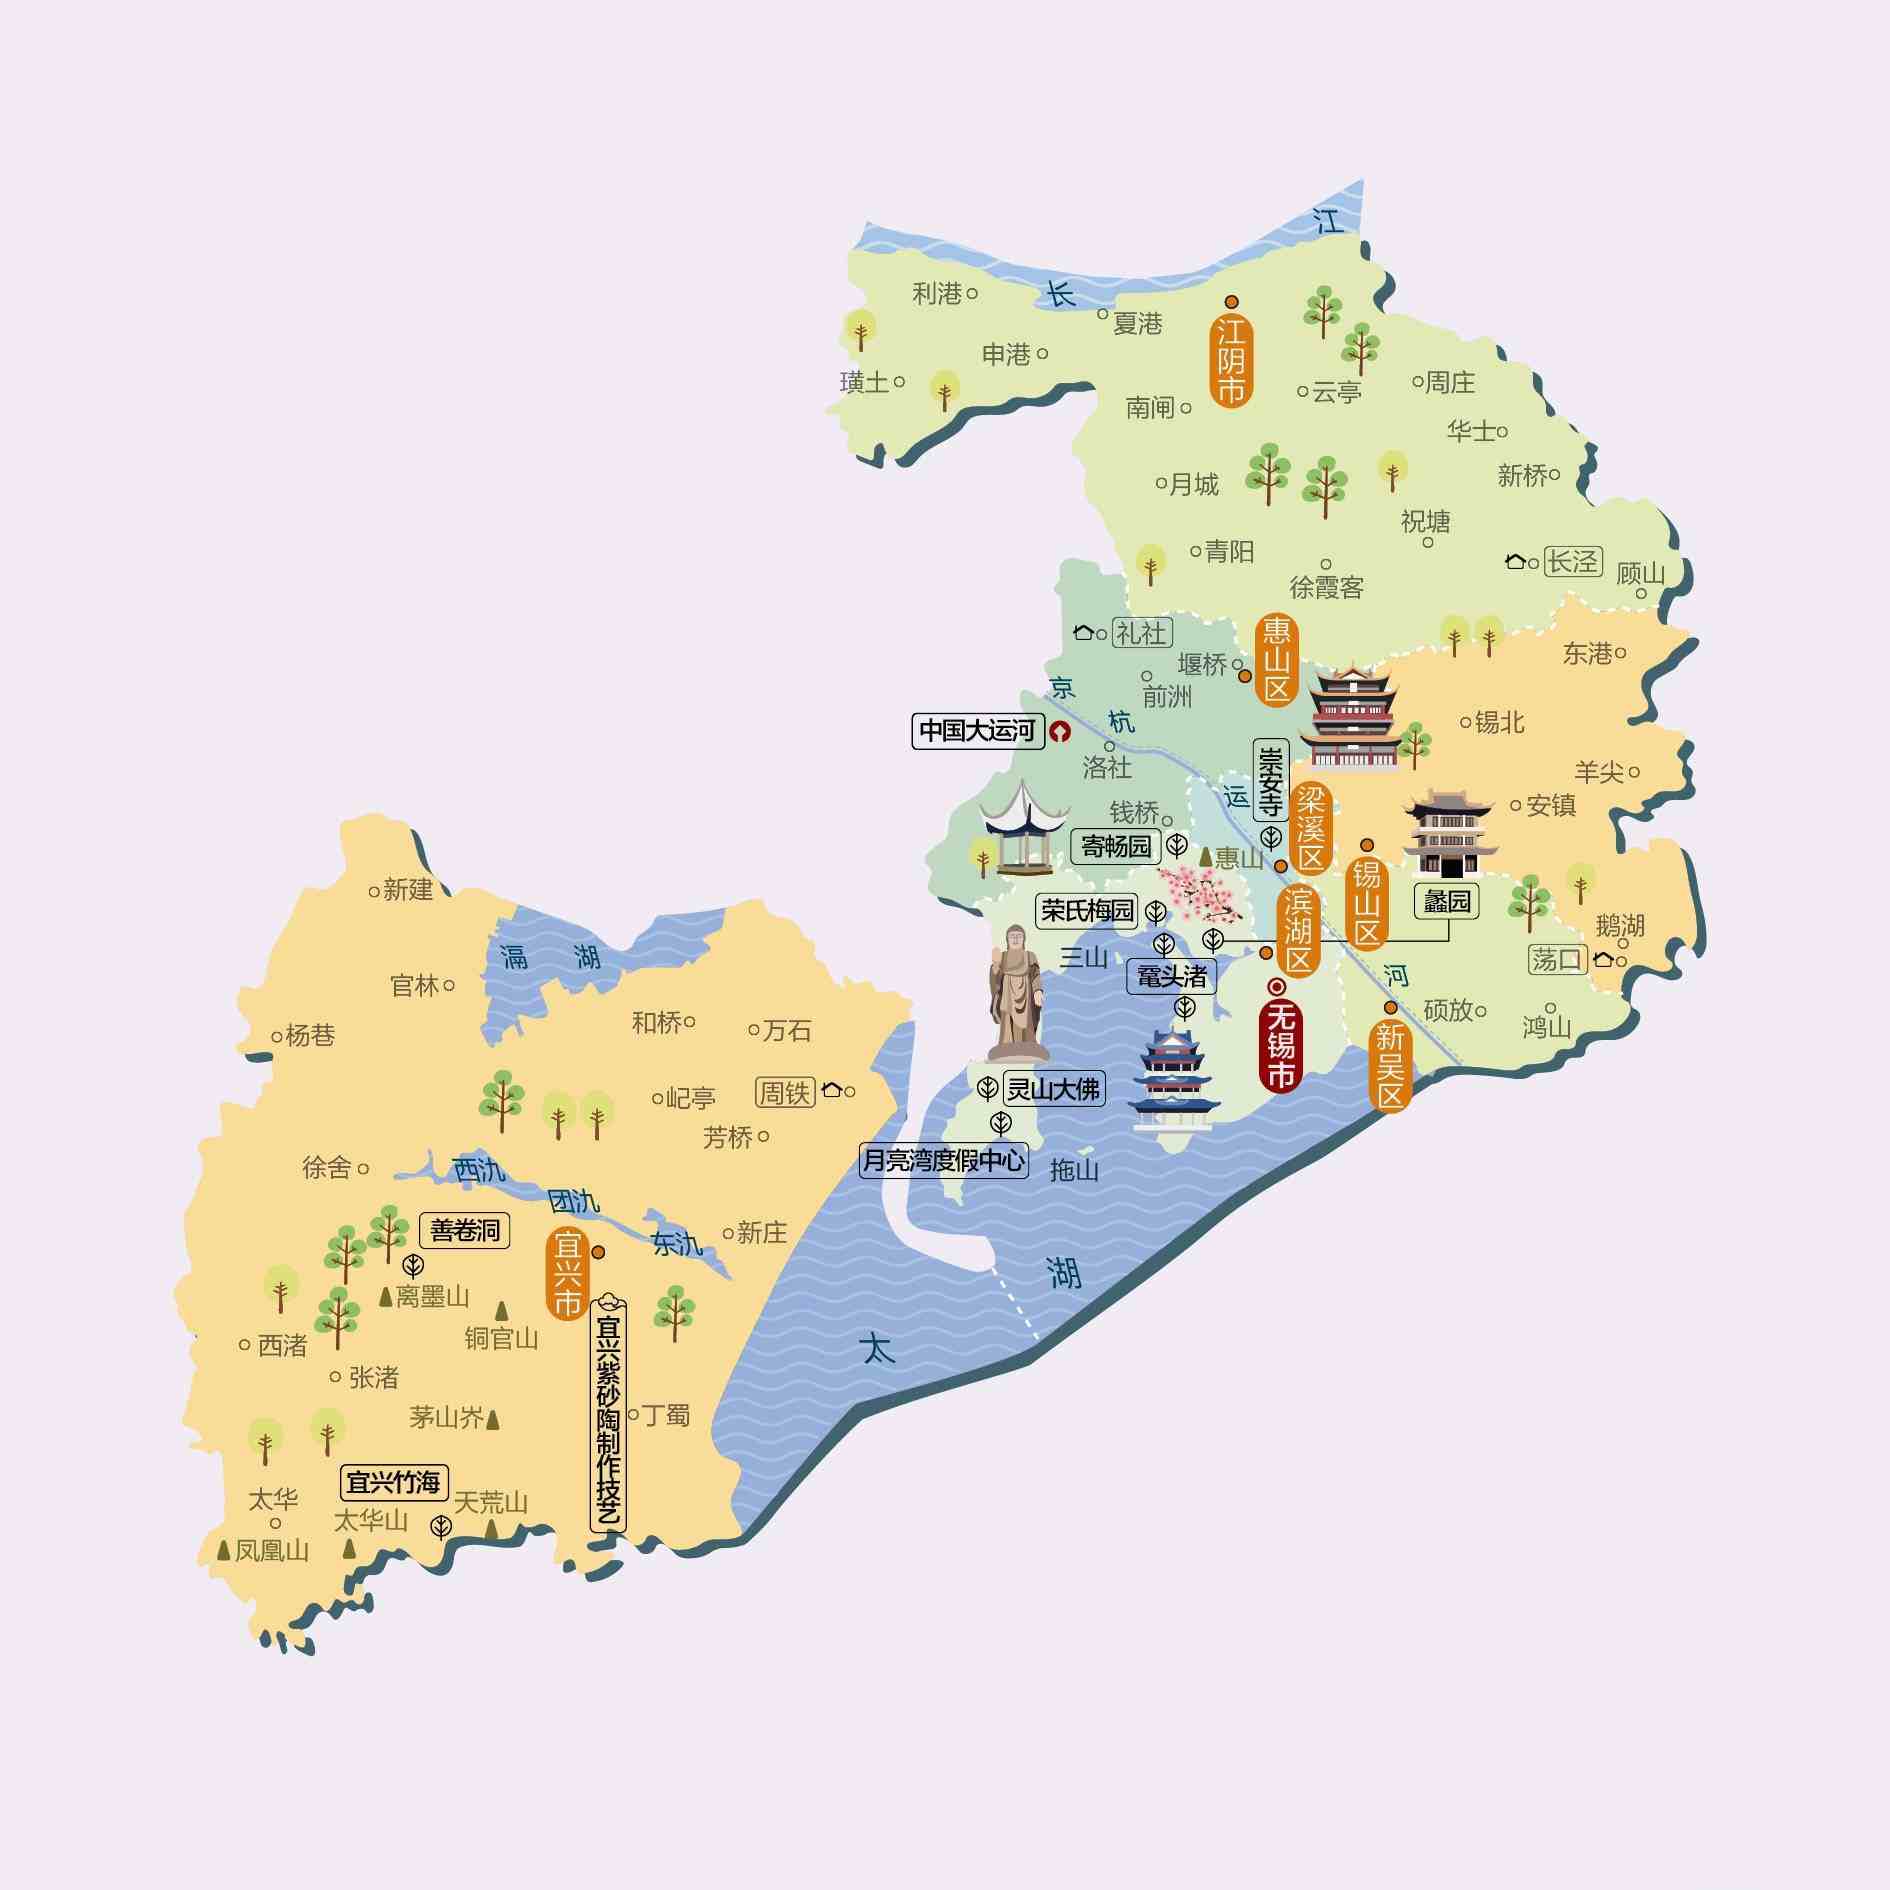 江苏省无锡市地图 区域版 基础要素版